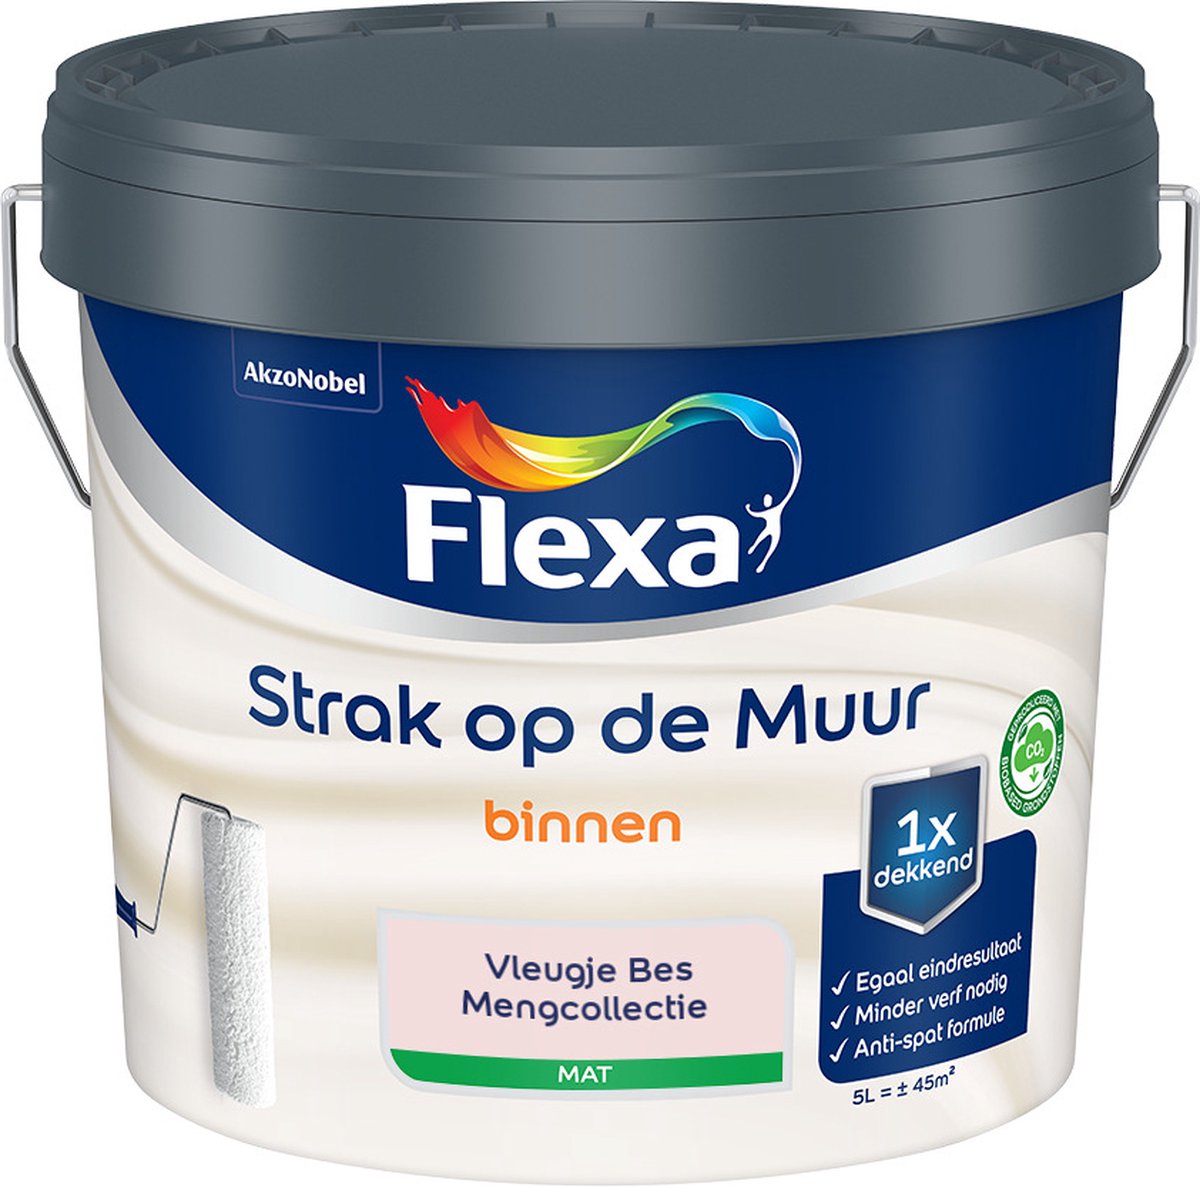 Flexa - Strak op de muur - Muurverf - Mengcollectie - Vleugje Bes - 5 Liter